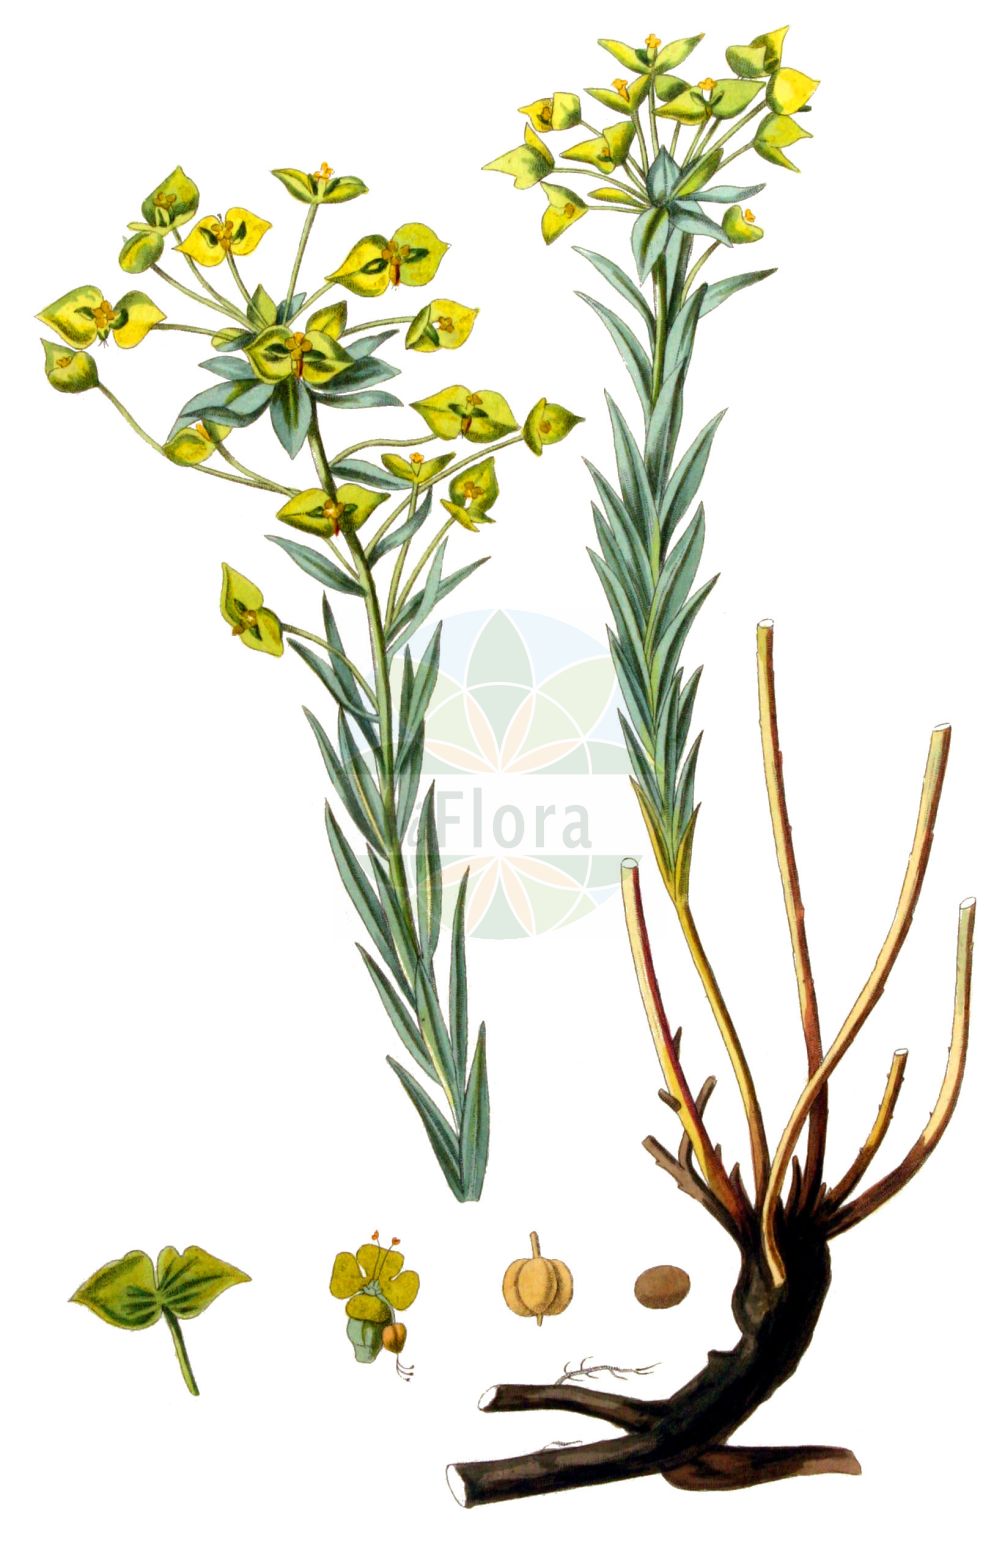 Historische Abbildung von Euphorbia seguieriana (Steppen-Wolfsmilch - Seguier's Spurge). Das Bild zeigt Blatt, Bluete, Frucht und Same. ---- Historical Drawing of Euphorbia seguieriana (Steppen-Wolfsmilch - Seguier's Spurge). The image is showing leaf, flower, fruit and seed.(Euphorbia seguieriana,Steppen-Wolfsmilch,Seguier's Spurge,Euphorbia seguieriana,Galarhoeus seguierianus,Tithymalus seguierianus,Steppen-Wolfsmilch,Seguier's Spurge,Steppe Spurge,Euphorbia,Wolfsmilch,Spurge,Euphorbiaceae,Wolfsmilchgewächse,Spurge family,Blatt,Bluete,Frucht,Same,leaf,flower,fruit,seed,Kops (1800-1934))